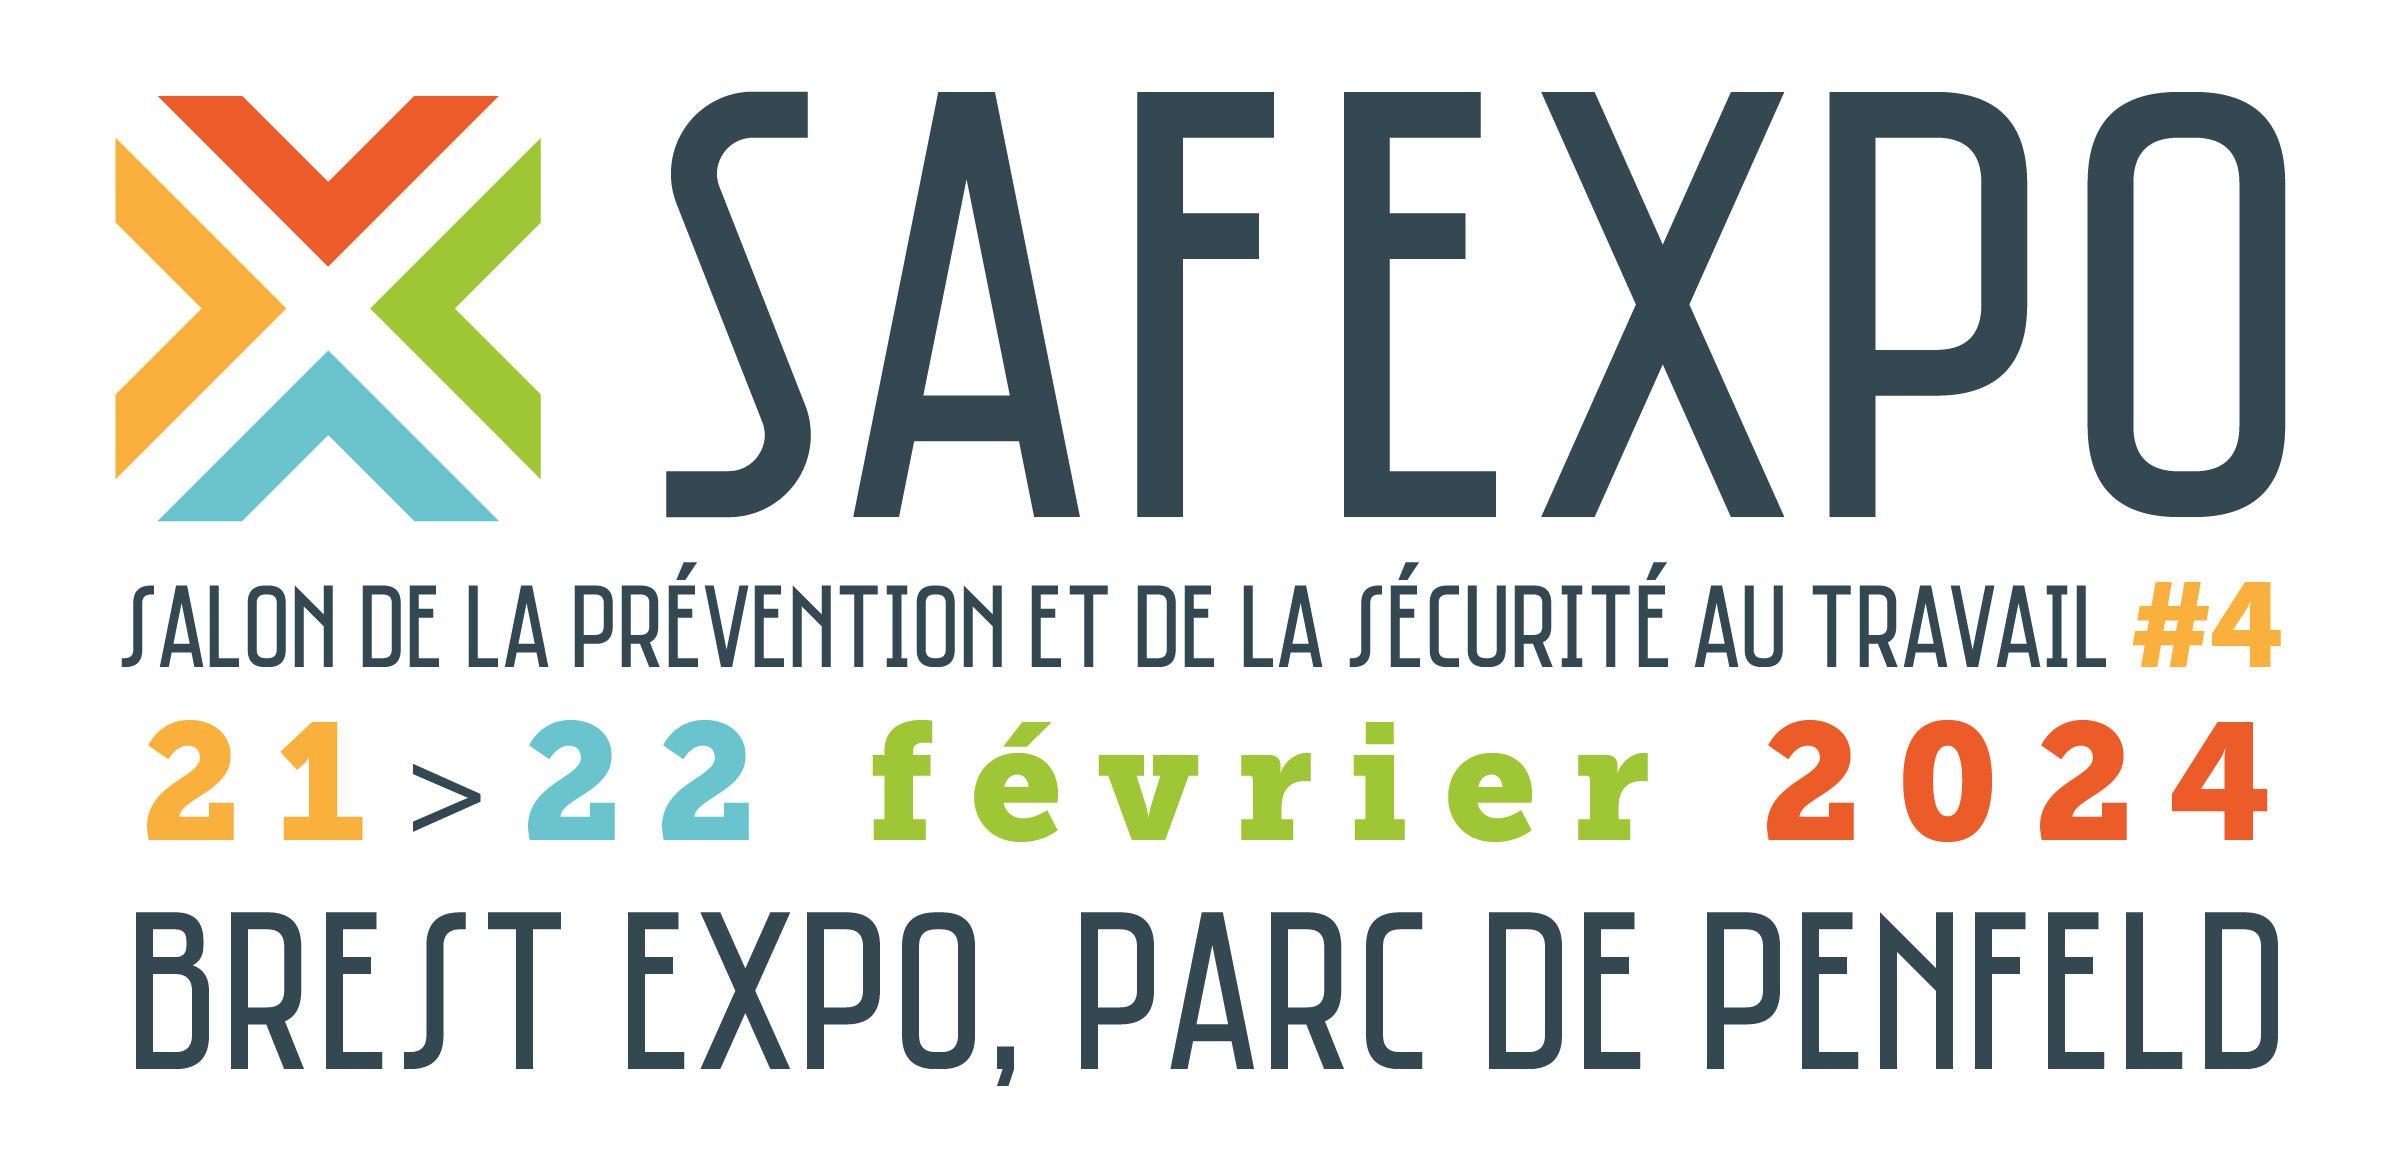 Safexpo - 21>22 fév. à Brest